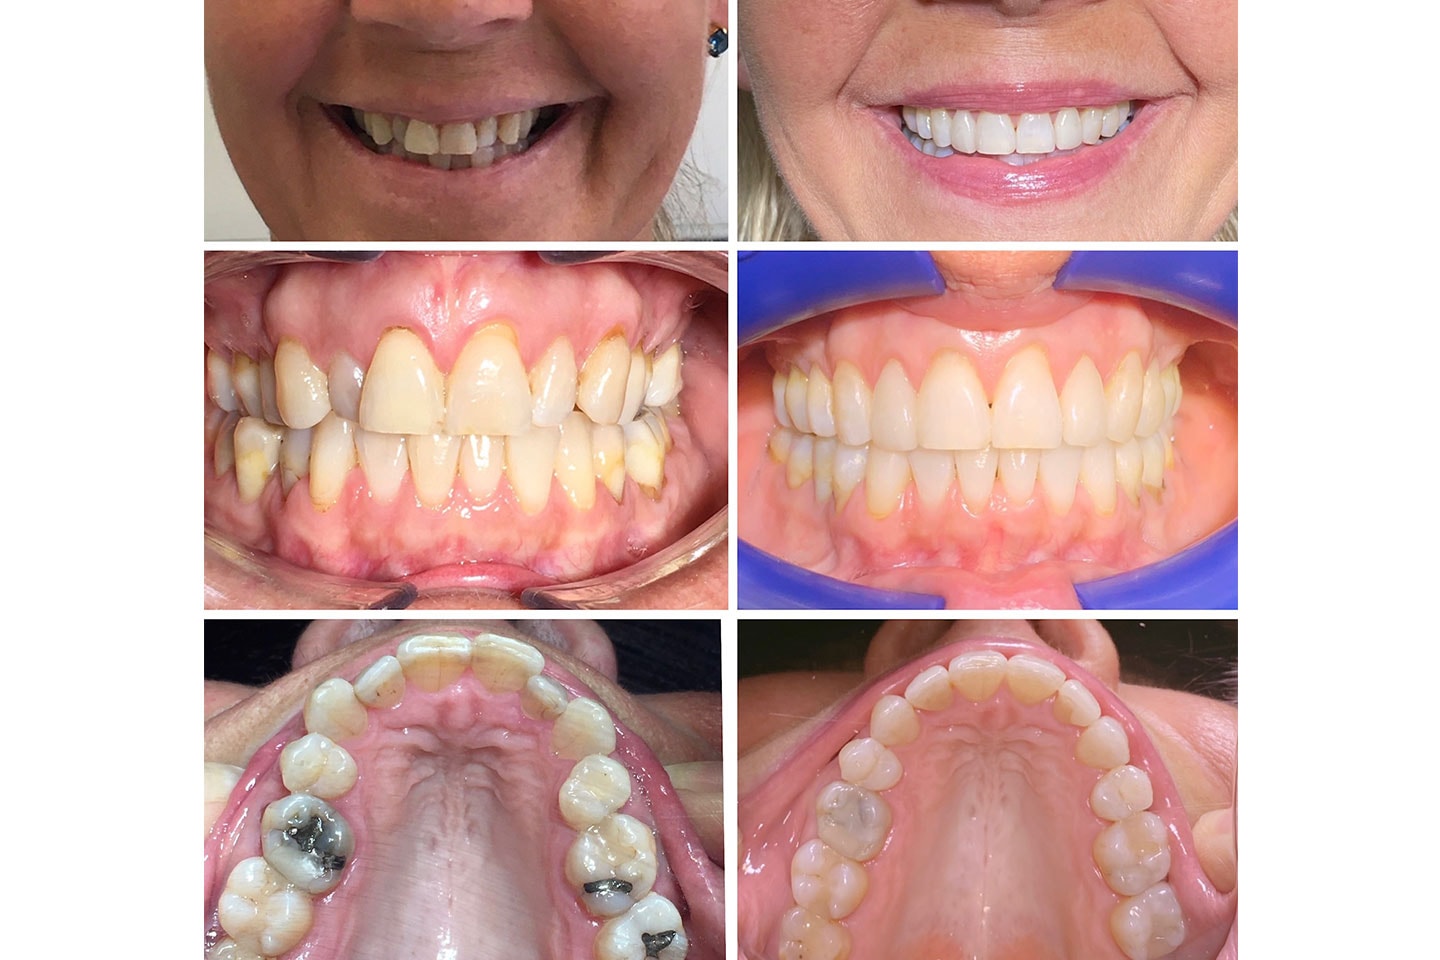 Tandreglering med Invisalign hos leg.tandläkare, nära Järntorget (8 av 12)